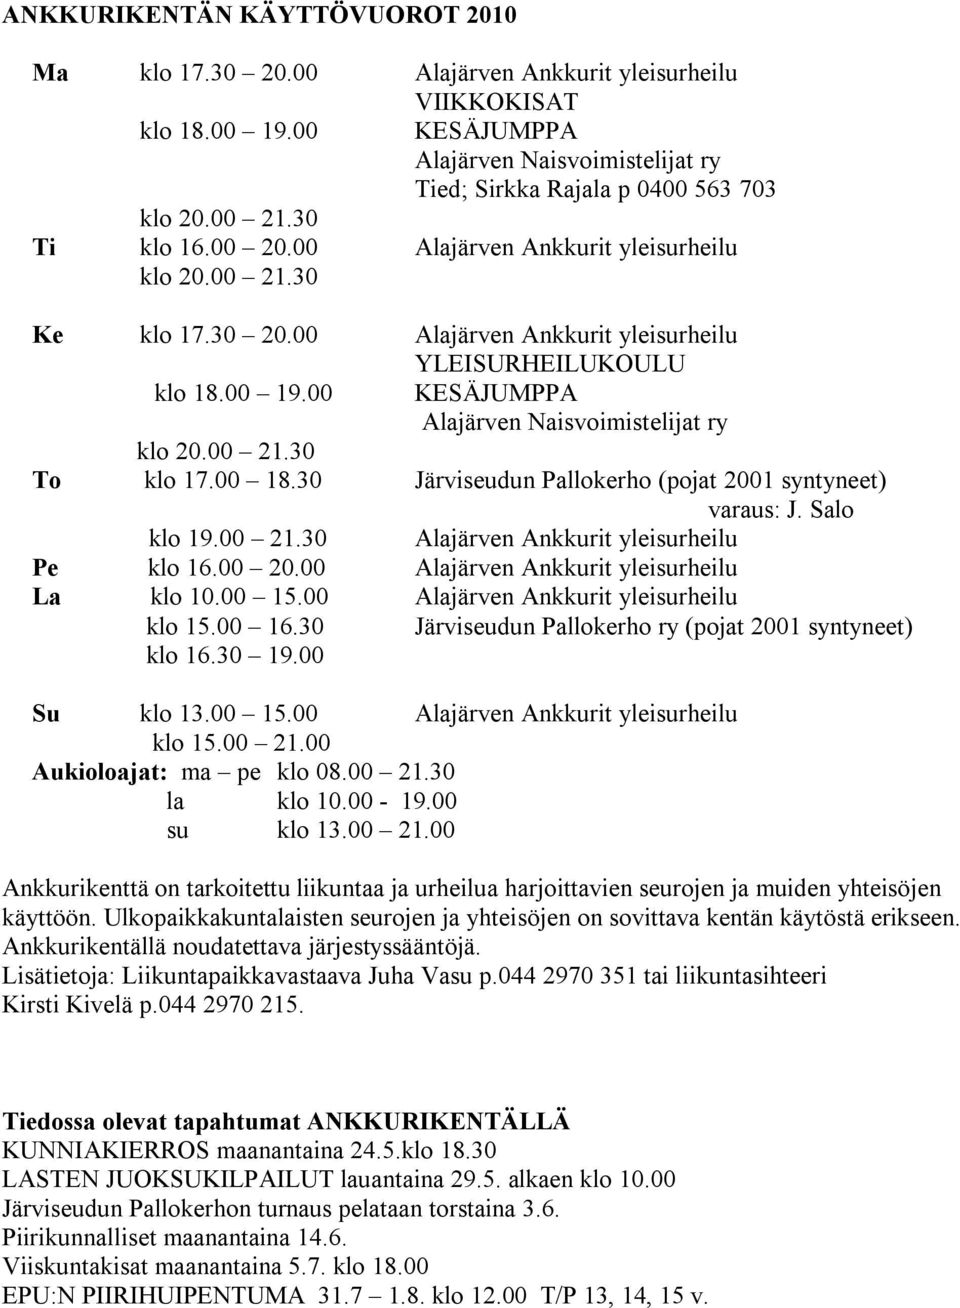 00 KESÄJUMPPA Alajärven Naisvoimistelijat ry klo 20.00 21.30 To klo 17.00 18.30 Järviseudun Pallokerho (pojat 2001 syntyneet) varaus: J. Salo klo 19.00 21.30 Alajärven Ankkurit yleisurheilu Pe klo 16.